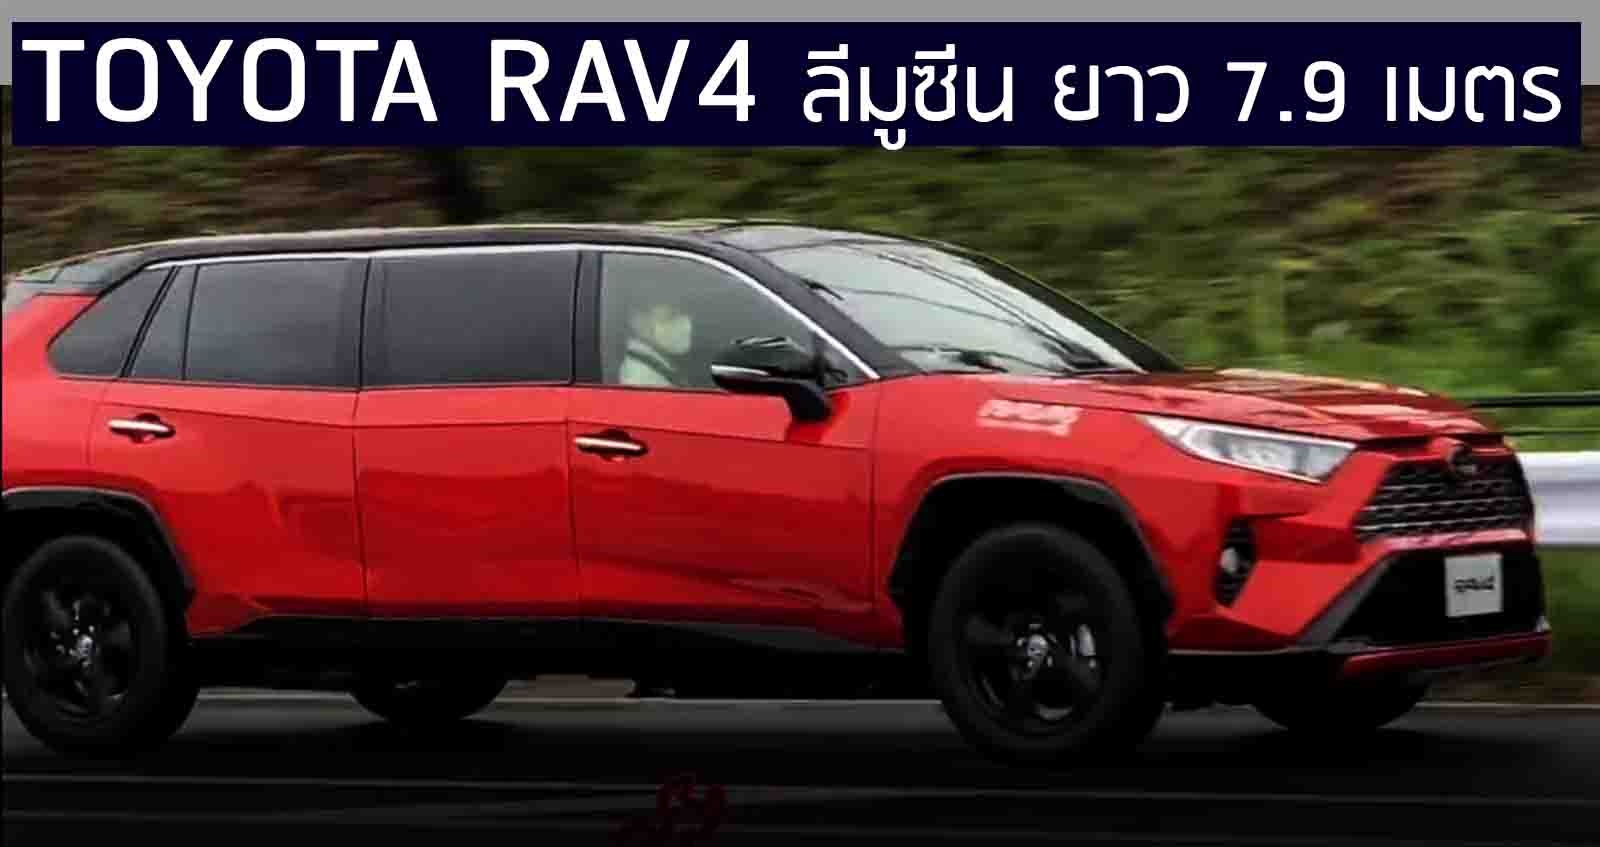 Toyota RAV4 ลีมูซีน ตัวถังยาว 7.9 เมตร สร้างโดยพนักงาน โตโยต้า